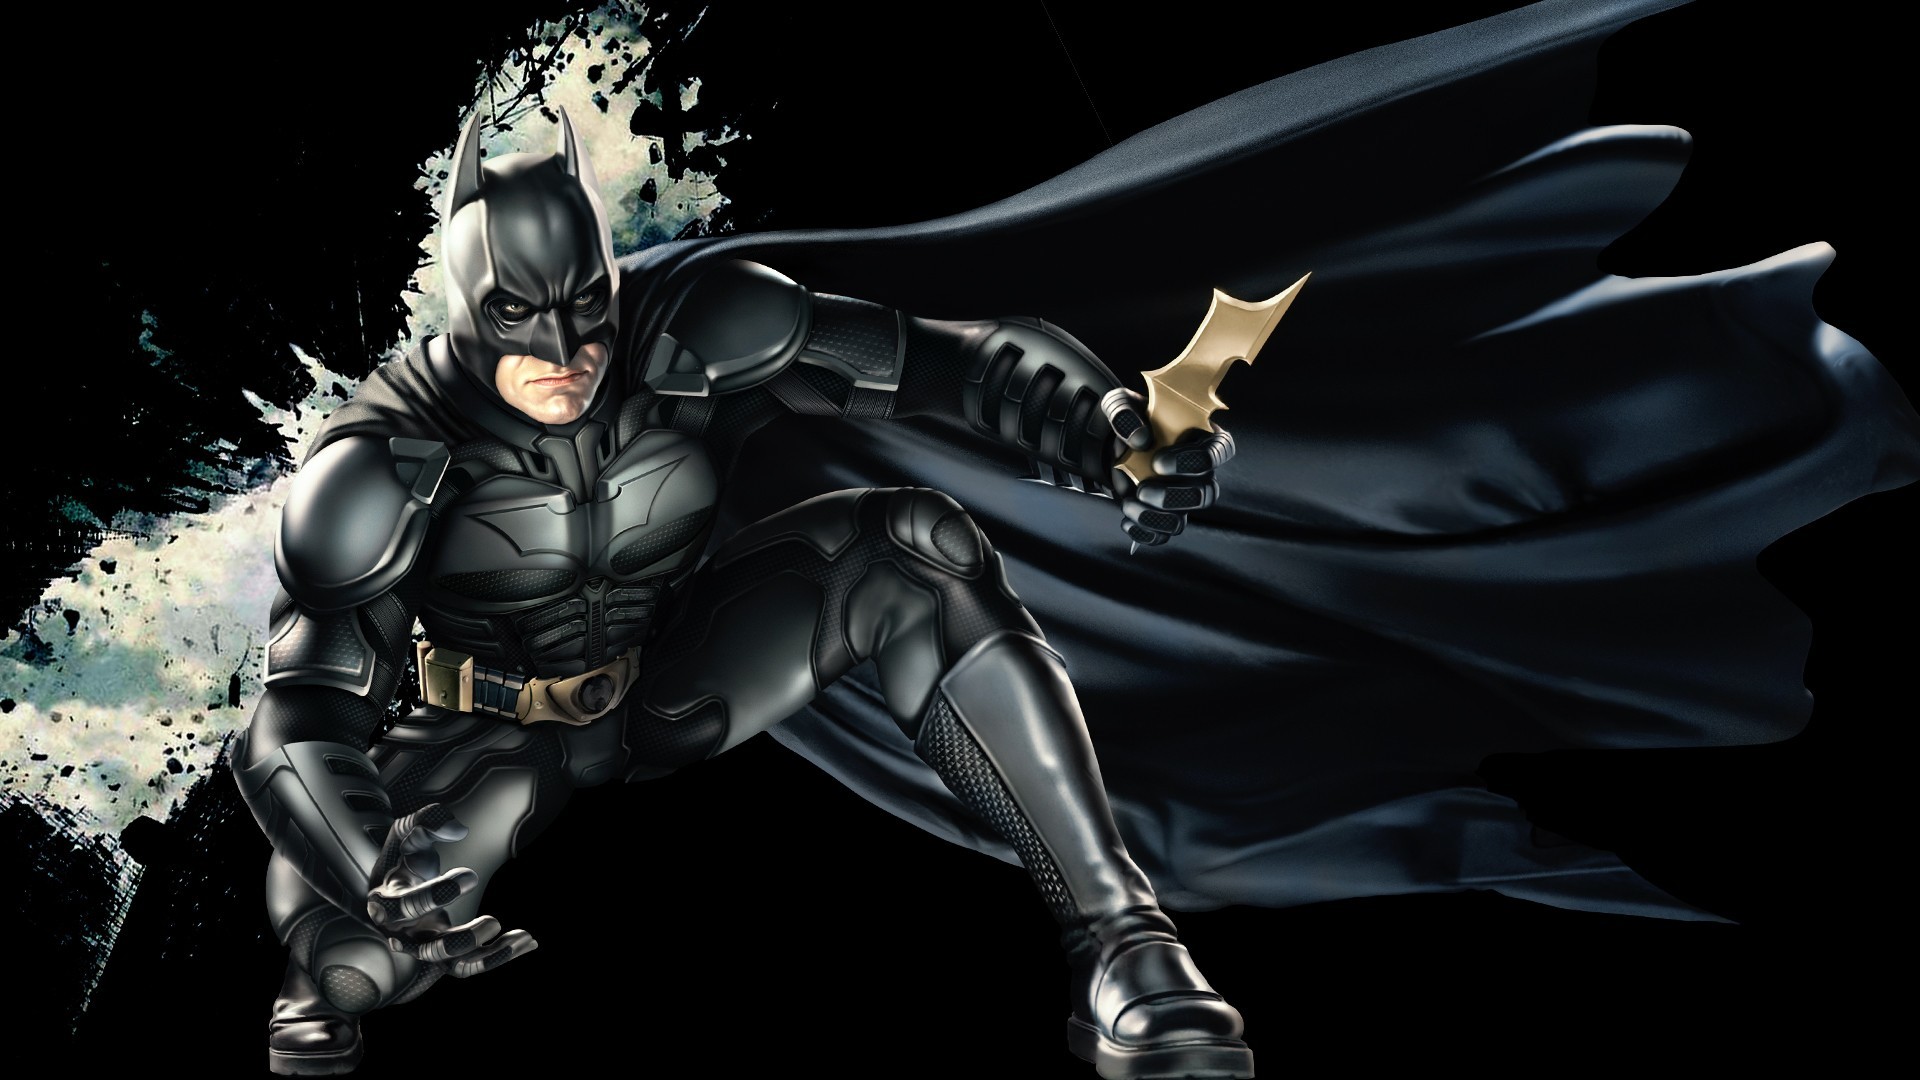 Descarga gratuita de fondo de pantalla para móvil de El Caballero Oscuro: La Leyenda Renace, Hombre Murciélago, The Batman, Películas.